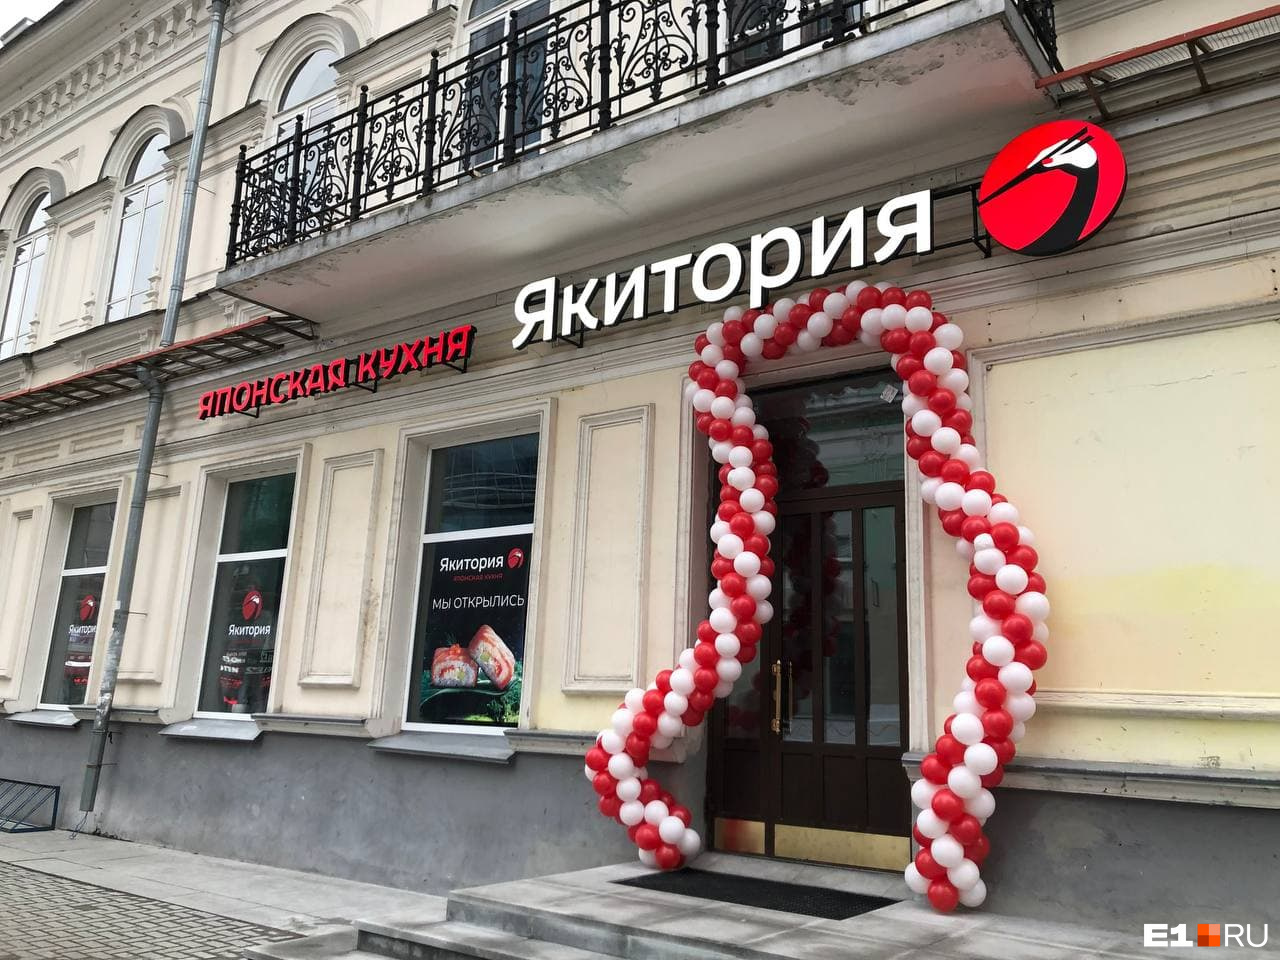 Проклятое место? В Екатеринбурге спустя год после открытия перестал работать ресторан «Якитория»